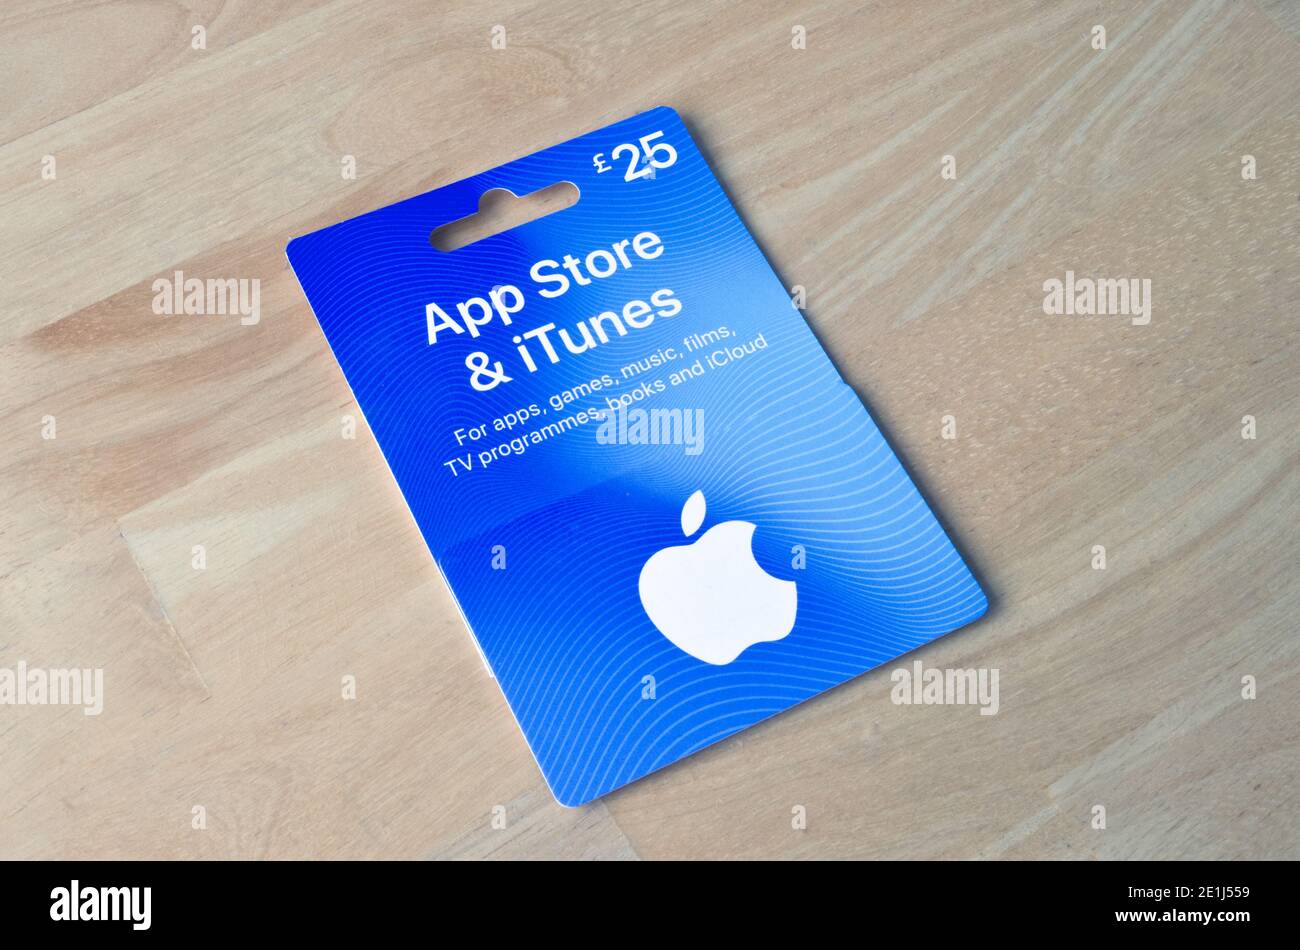 £25 Apple App Store e carta regalo, gettone o voucher iTunes, Regno Unito Foto Stock